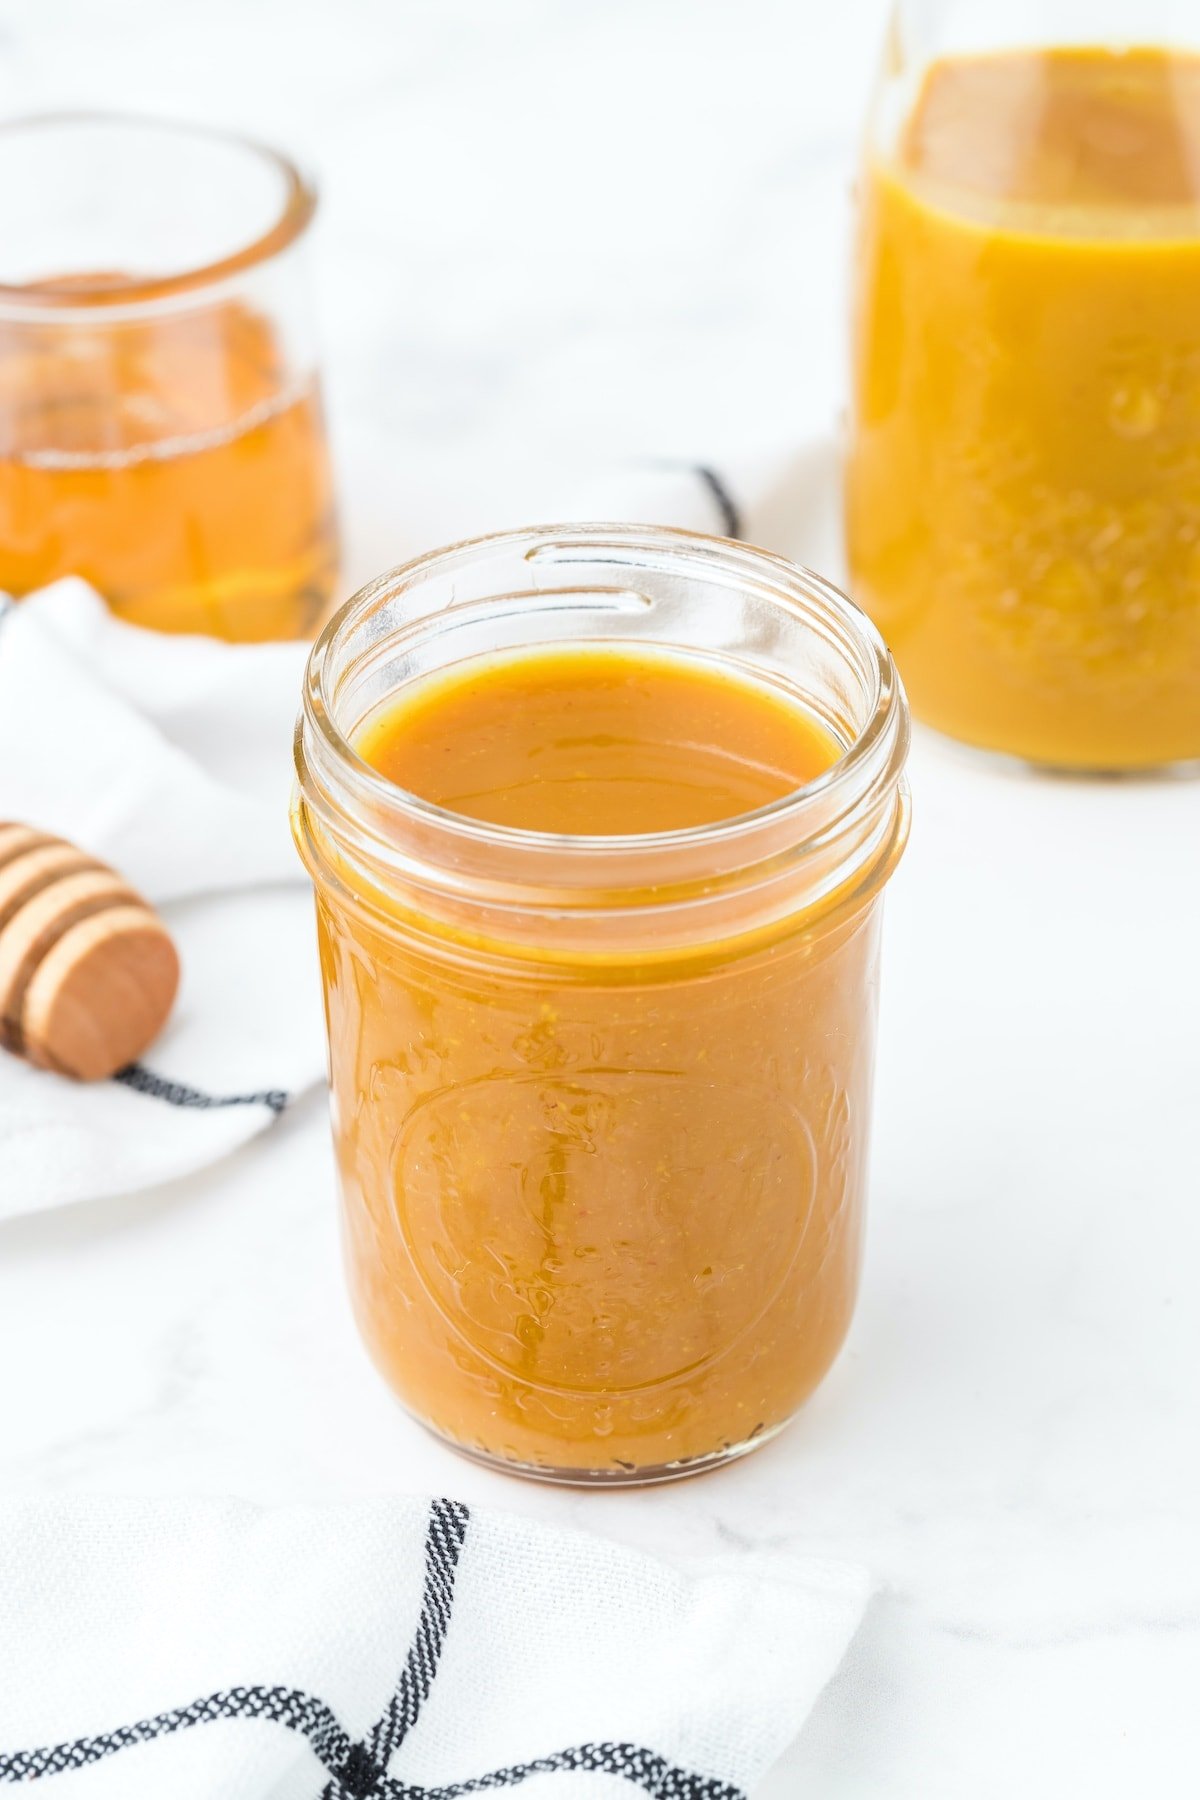 carolina mustard bbq sauce in a jar